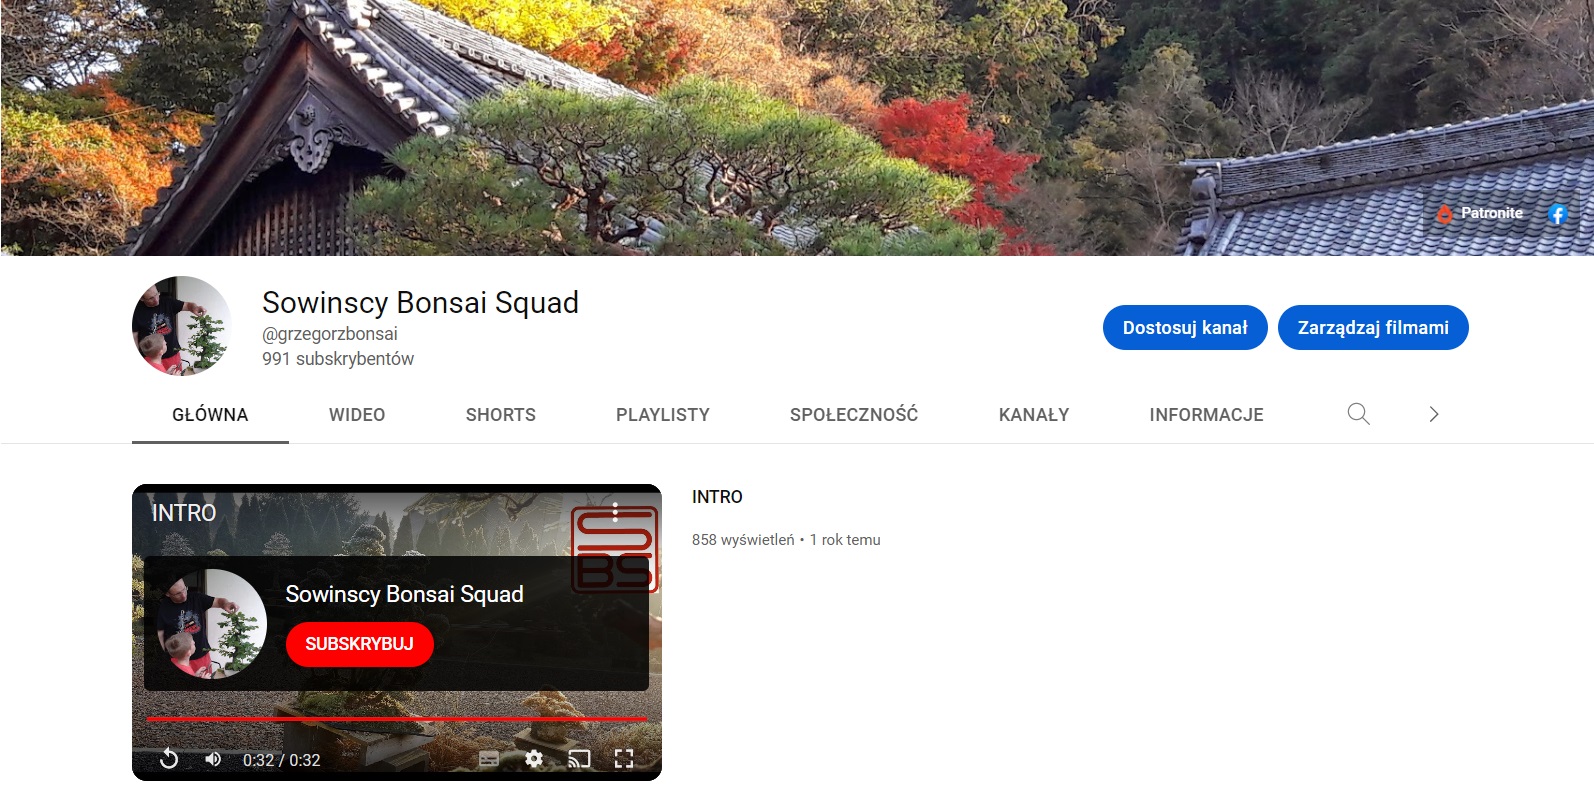 kanał sowinscy bonsai squad w serwisie youtube